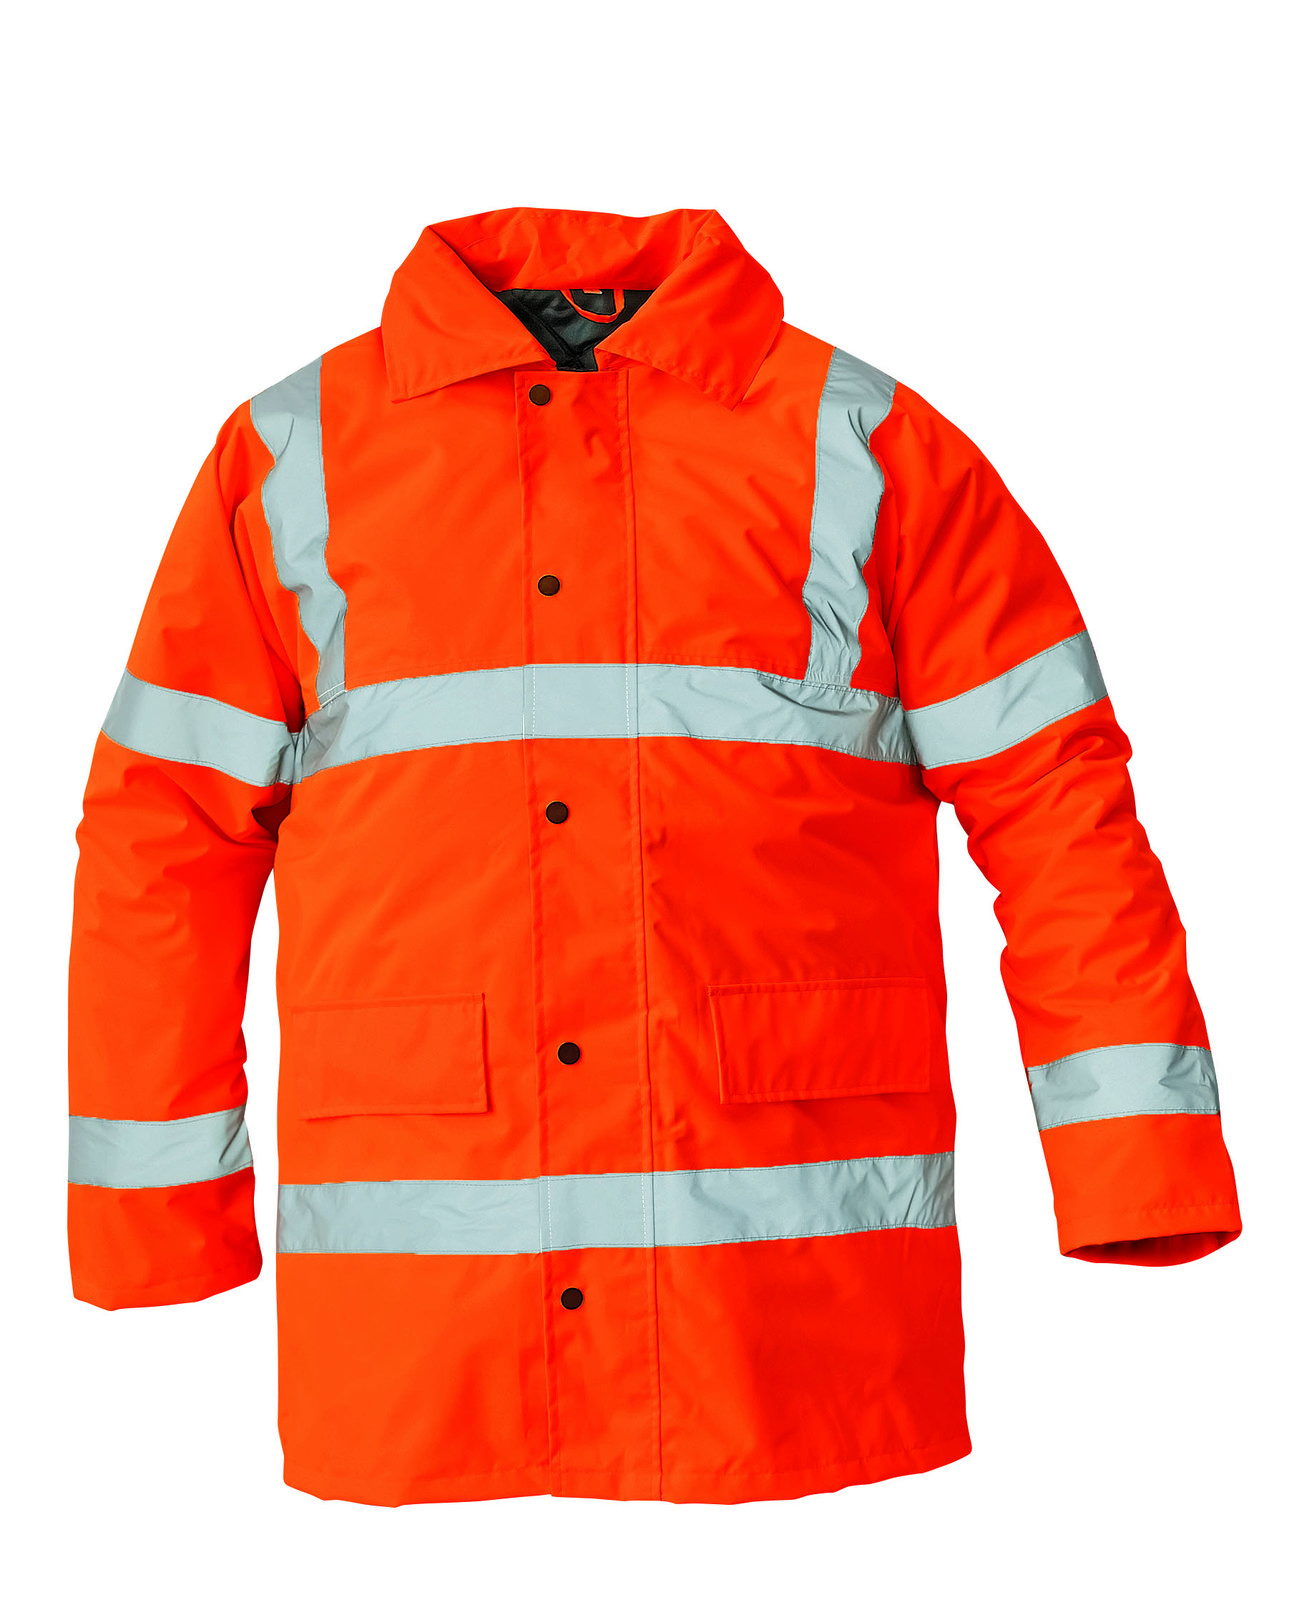 Ľahká zateplená reflexná bunda Sefton - veľkosť: S, farba: oranžová